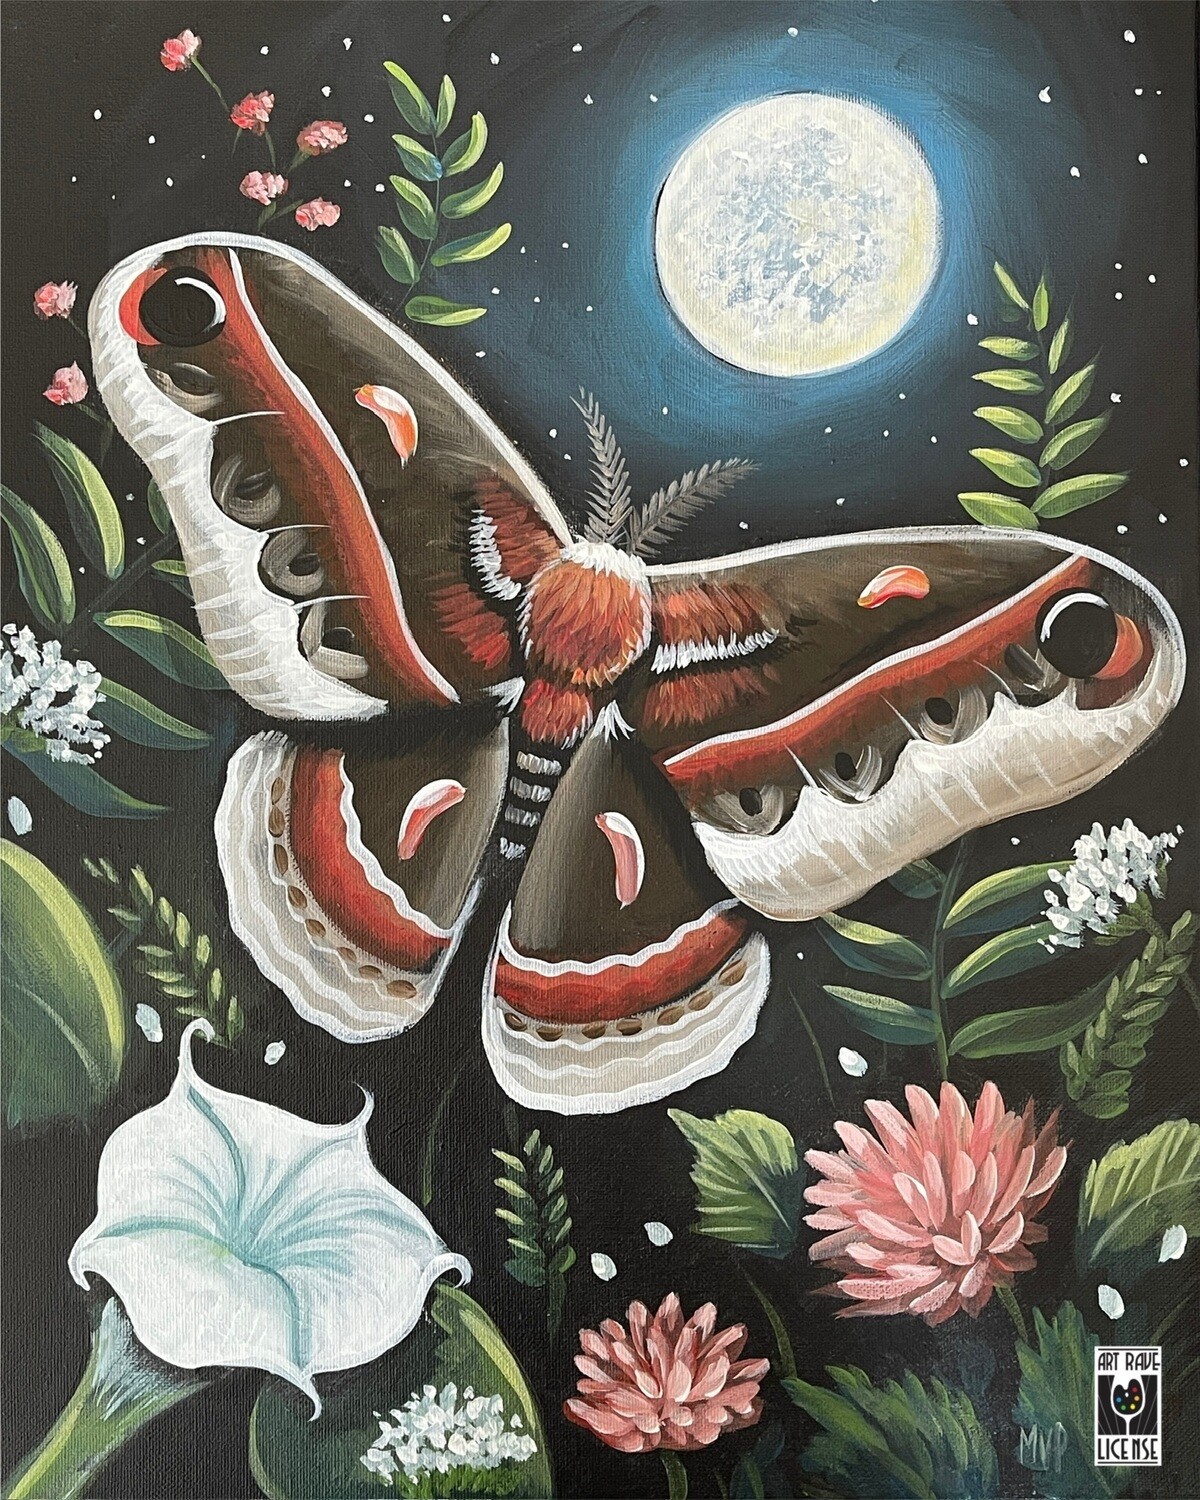 Midnight Moth Painting